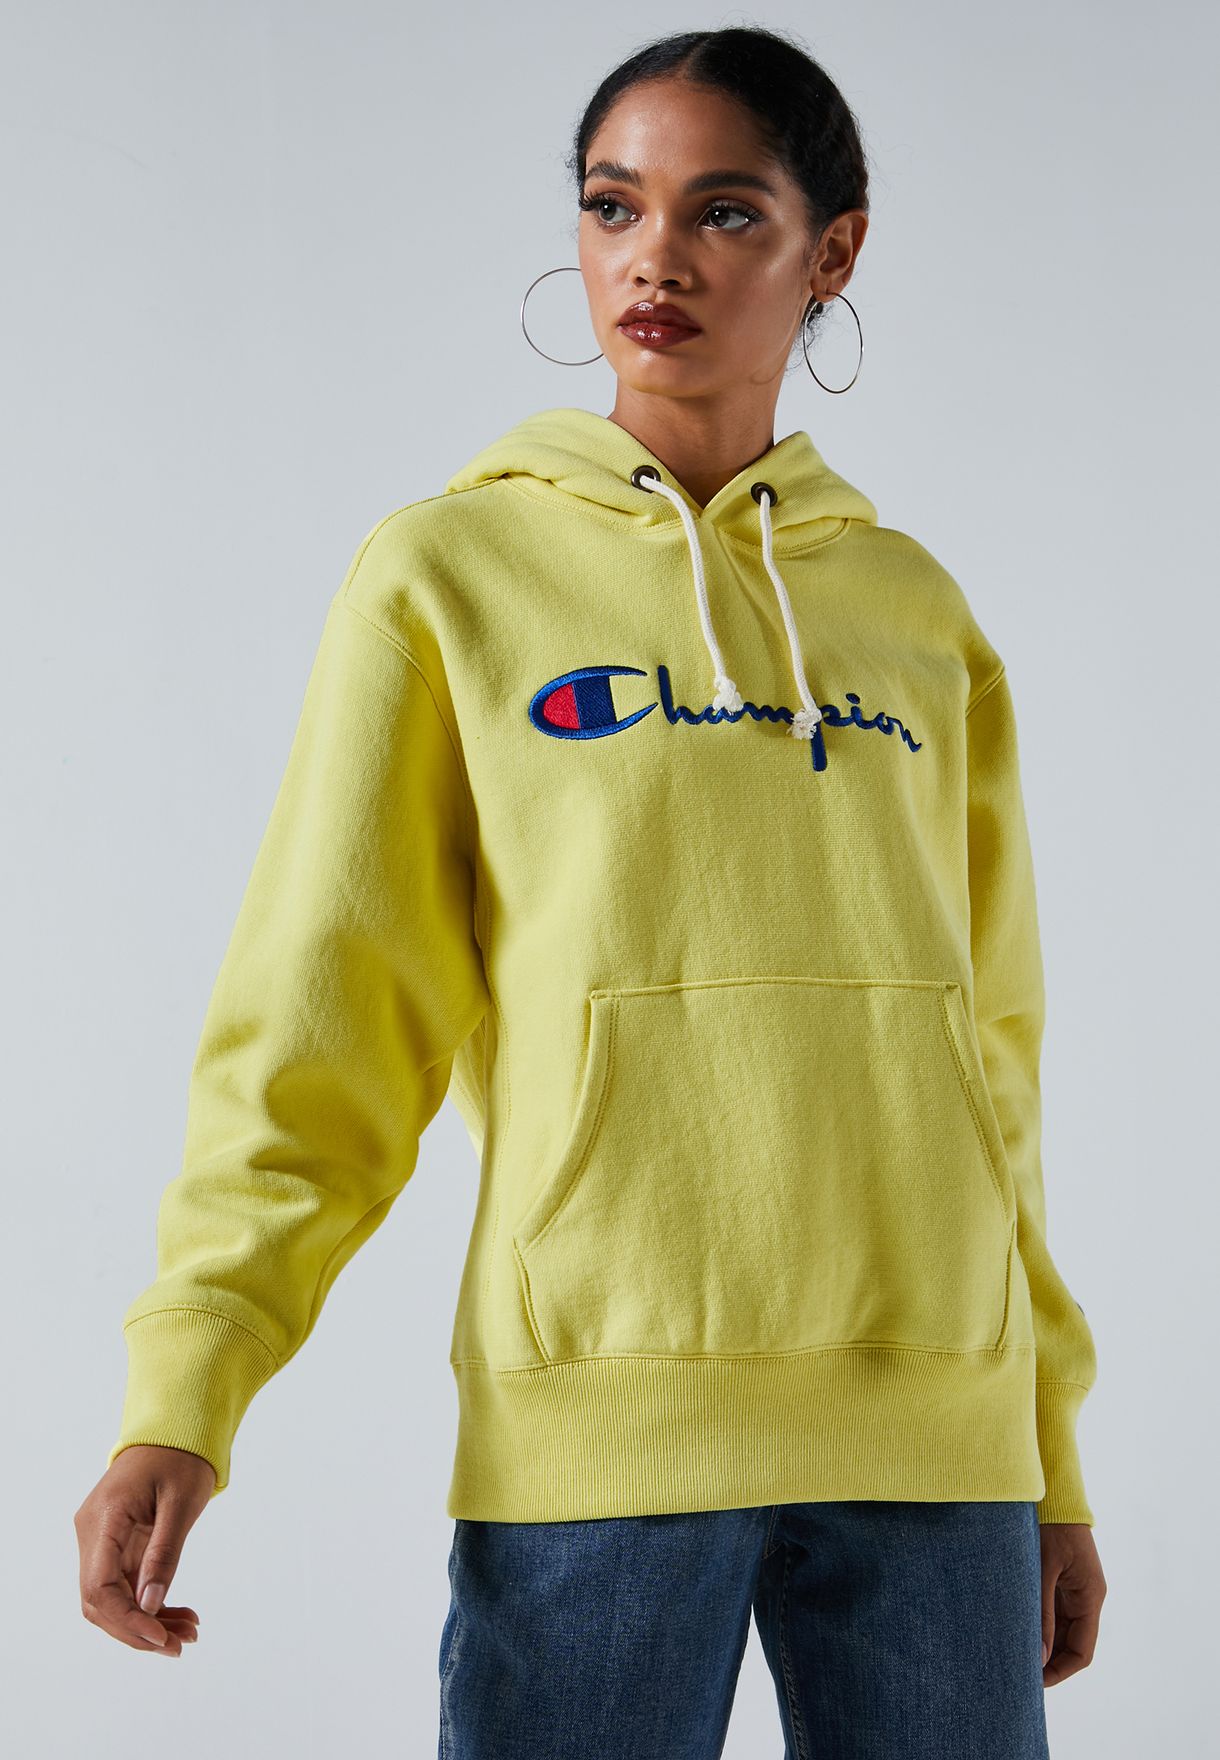 womens yellow champion hoodie